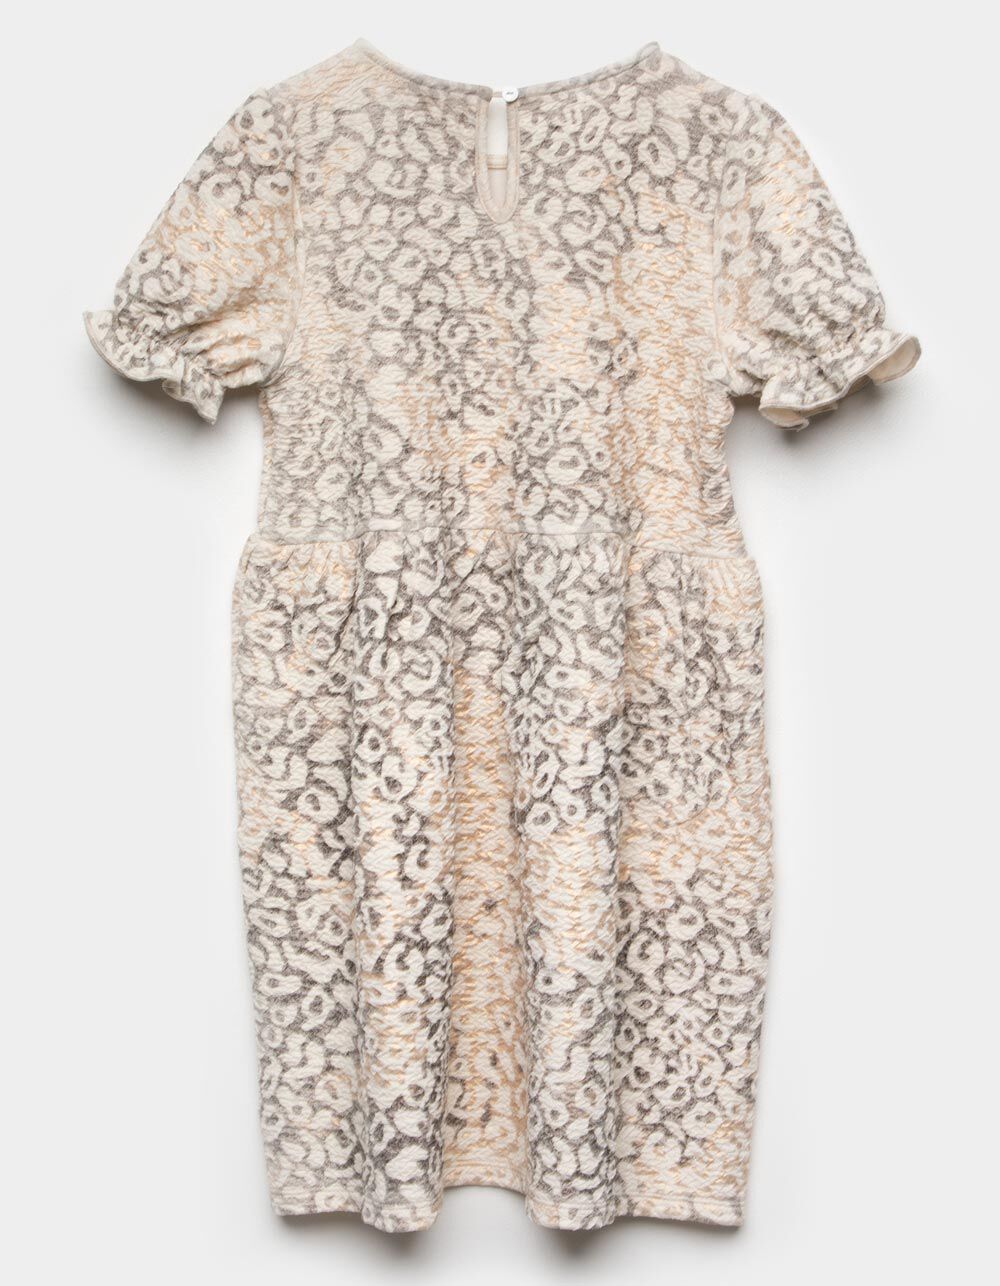 HAYDEN Leopard Puff Sleeve Girls Dress - CREAM COMBO | Tillys